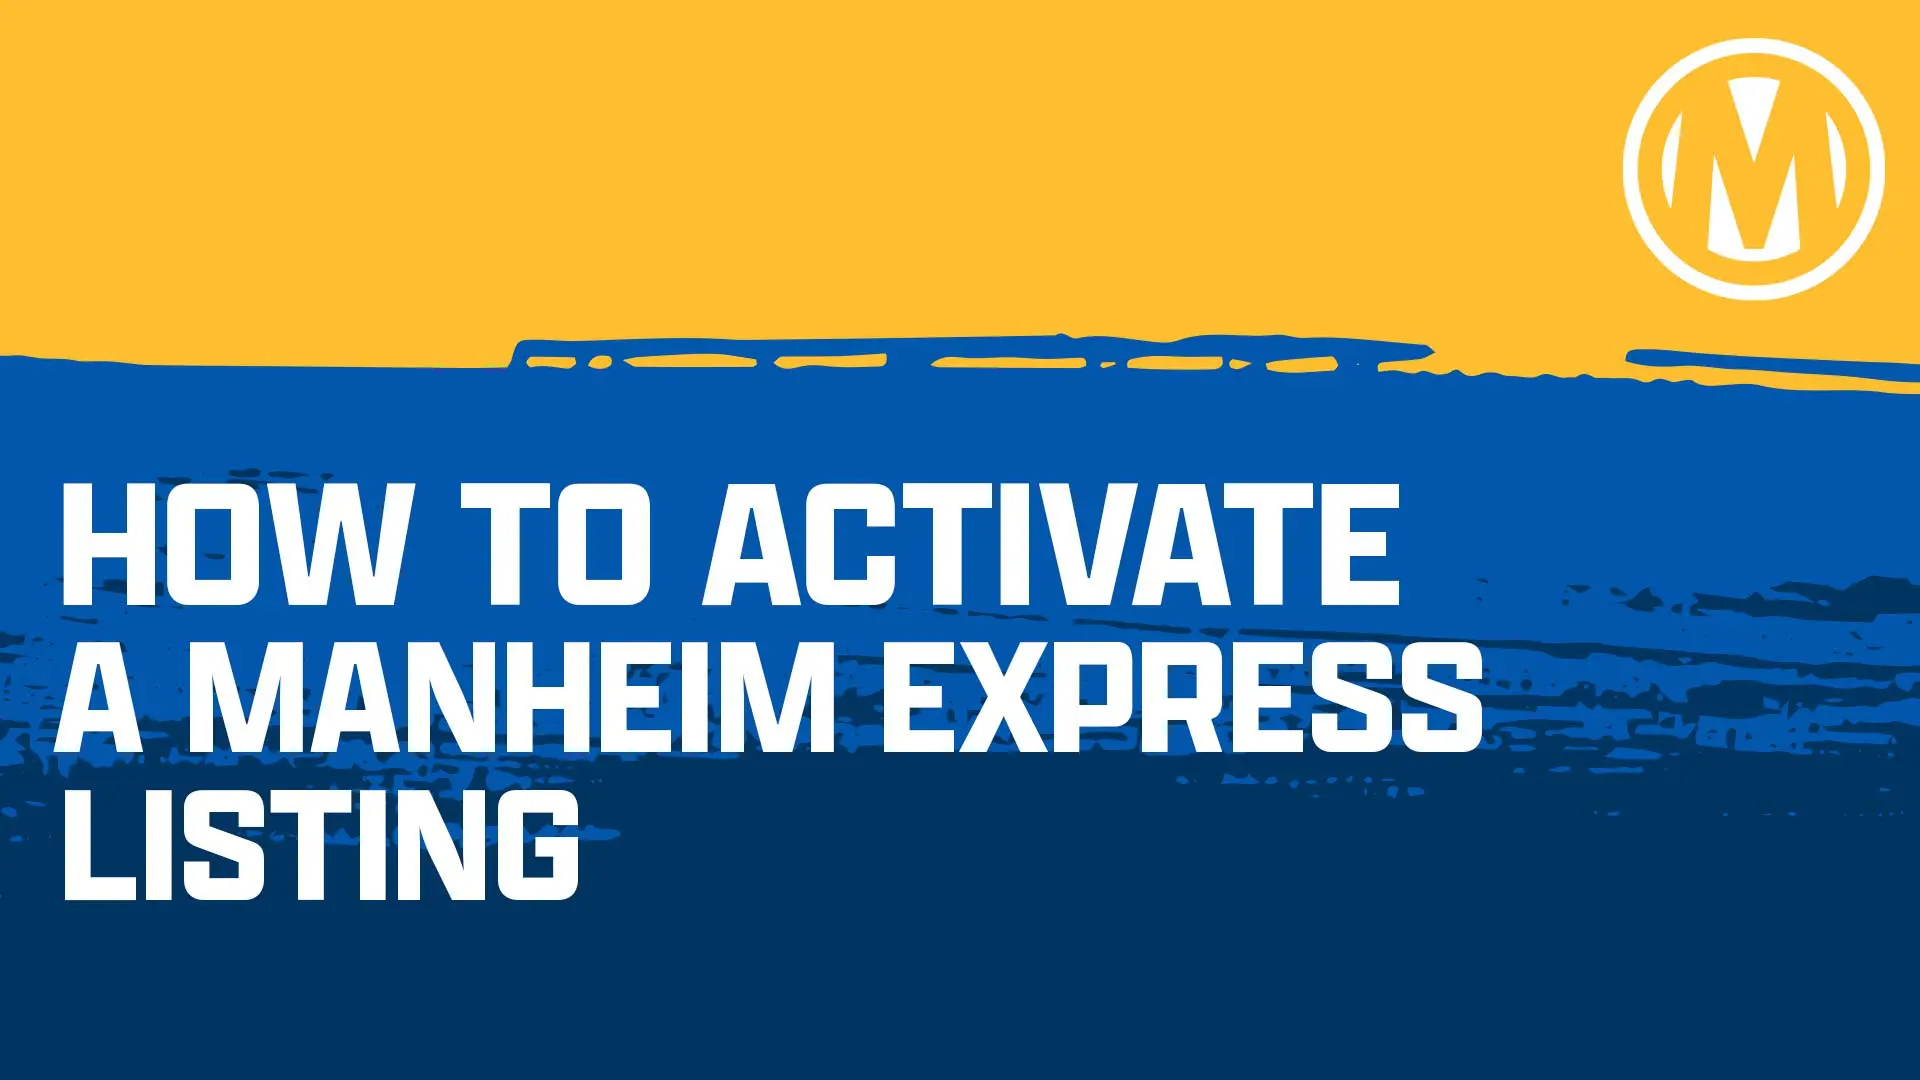 Manheim Express Activation Guide